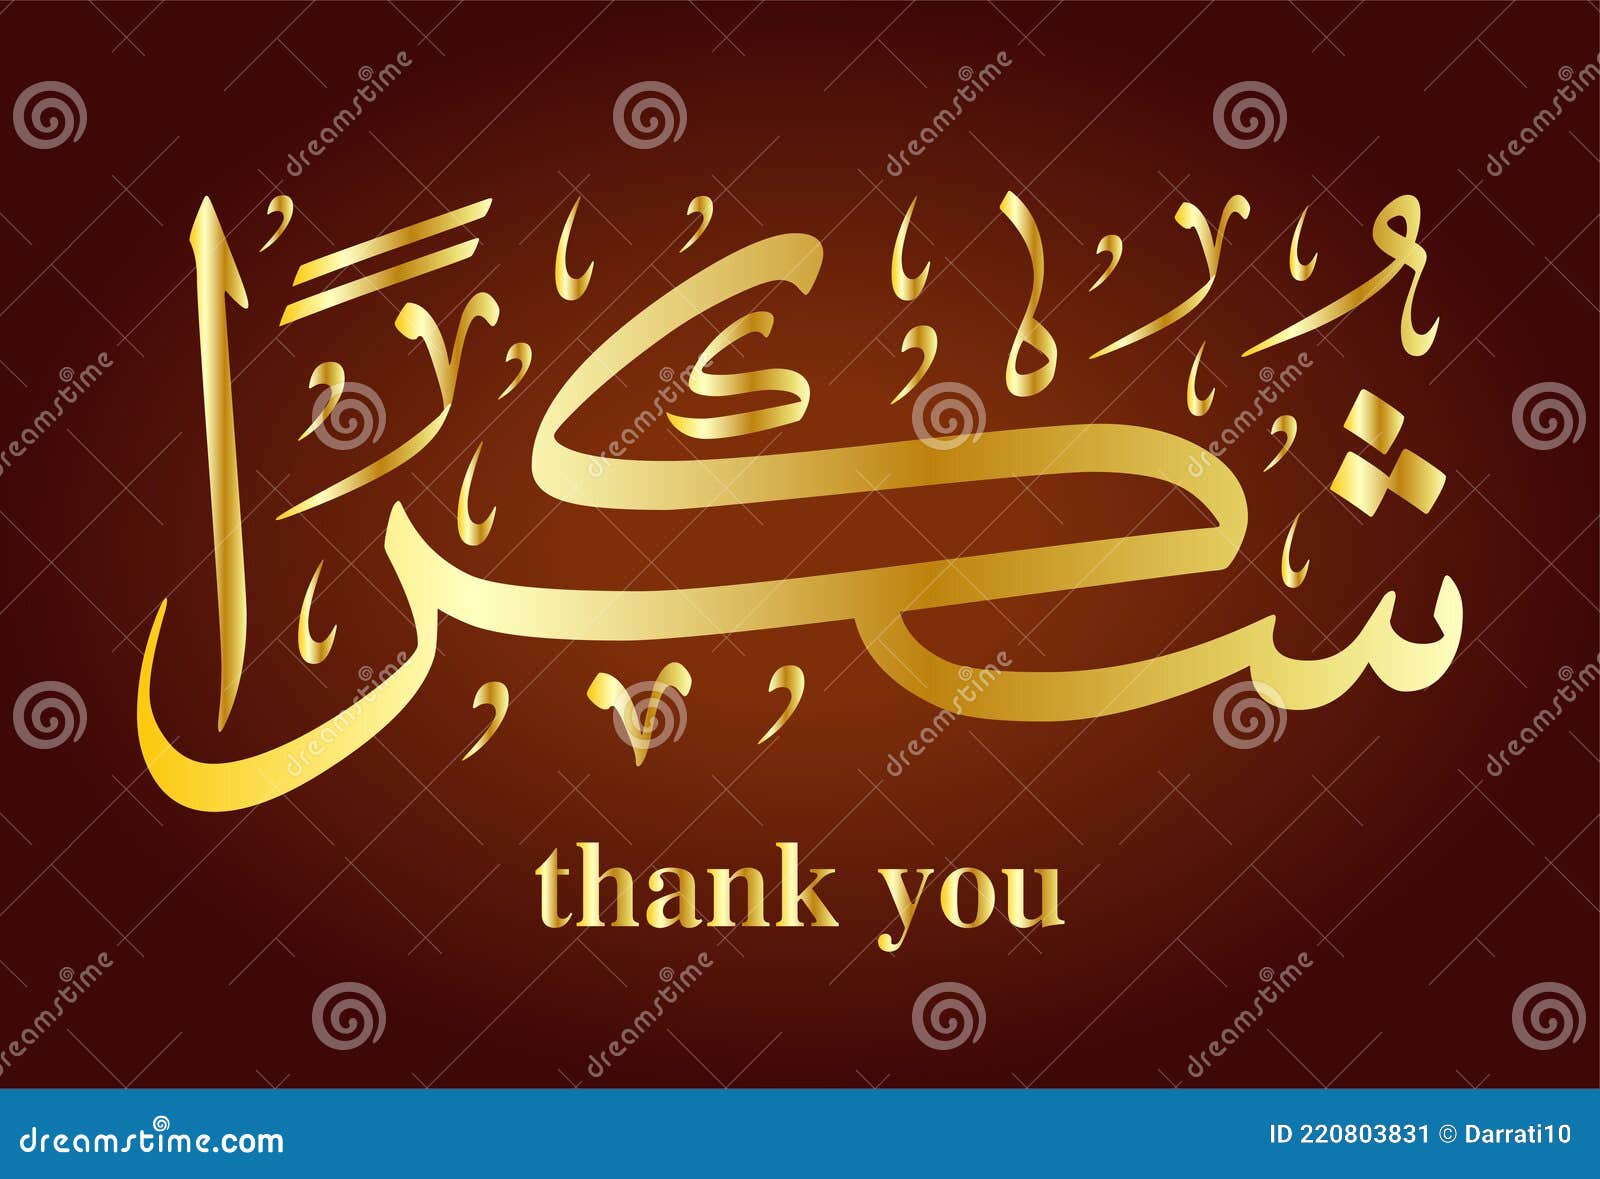 Как будет на арабском спасибо. Спасибо по арабски. Благодарность на арабском. Благодарю на арабском языке. Как на арабском спасибо.